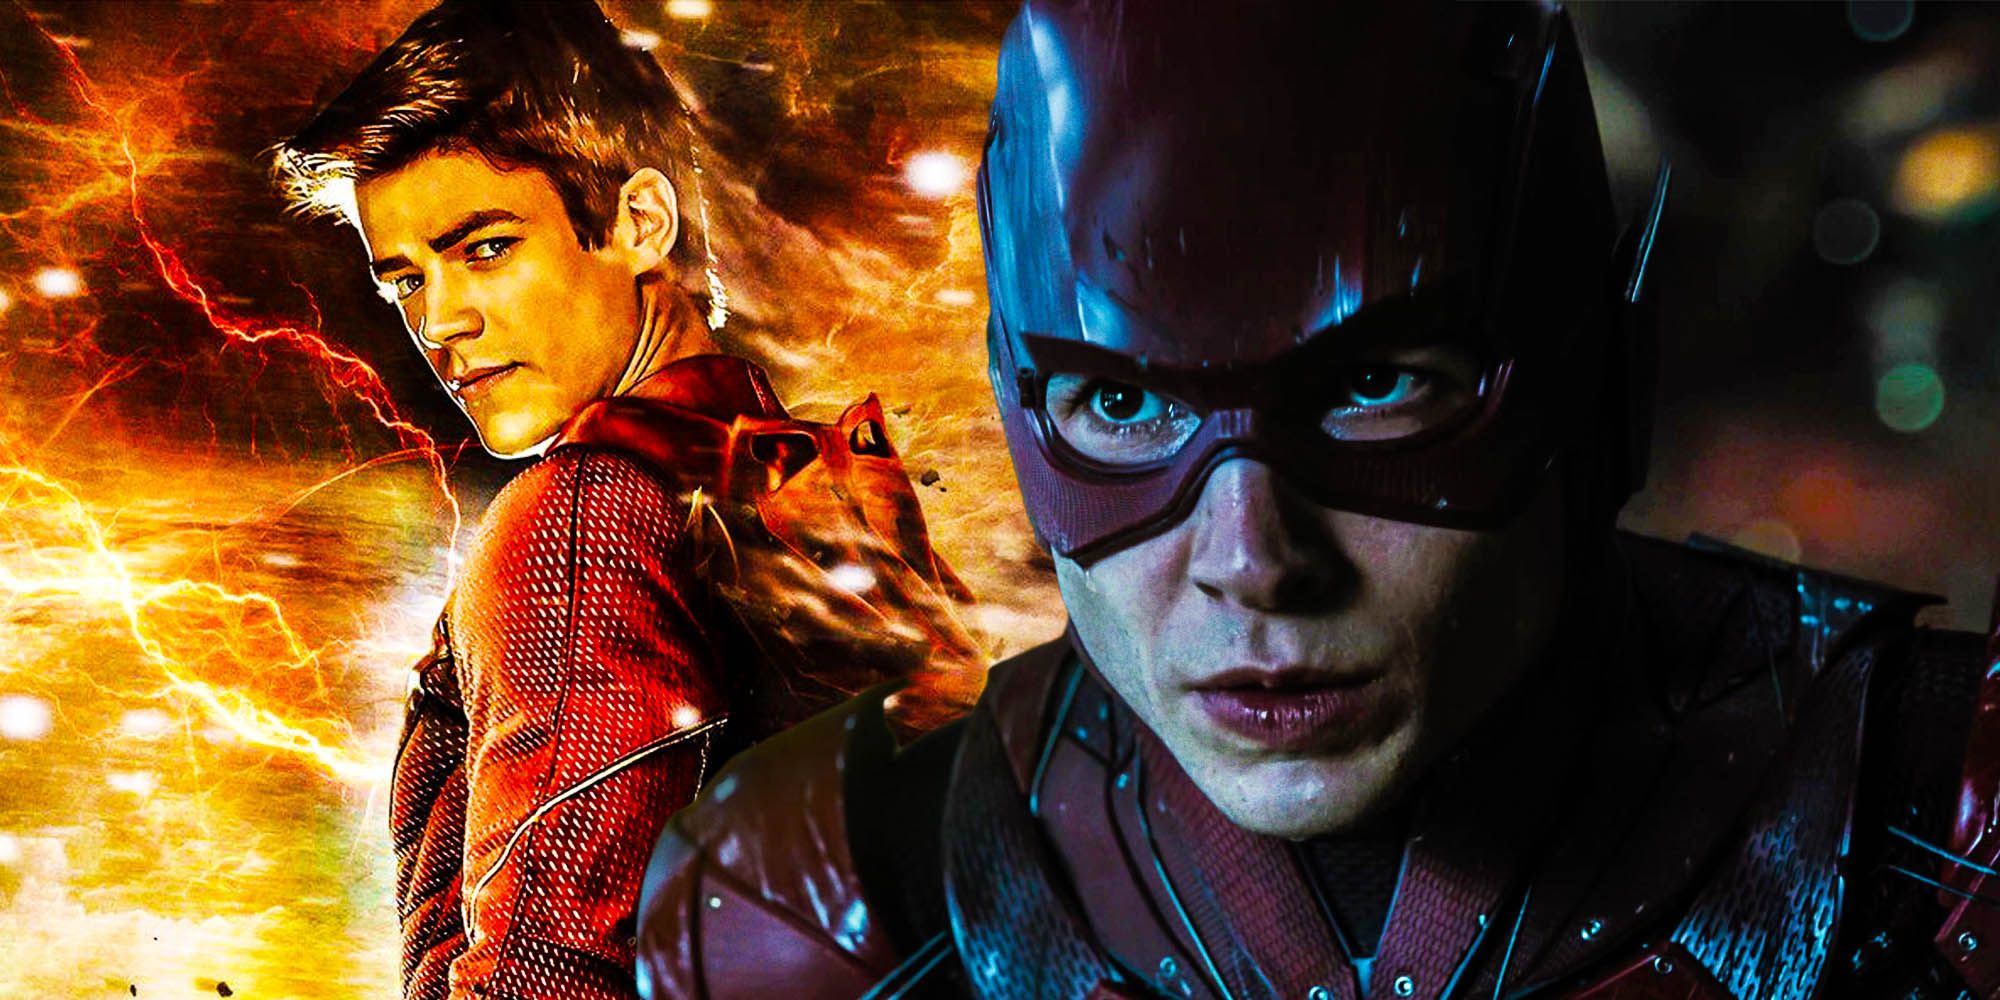 Les fans de Flash demandent à Grant Gustin de remplacer Ezra Miller dans le film DC